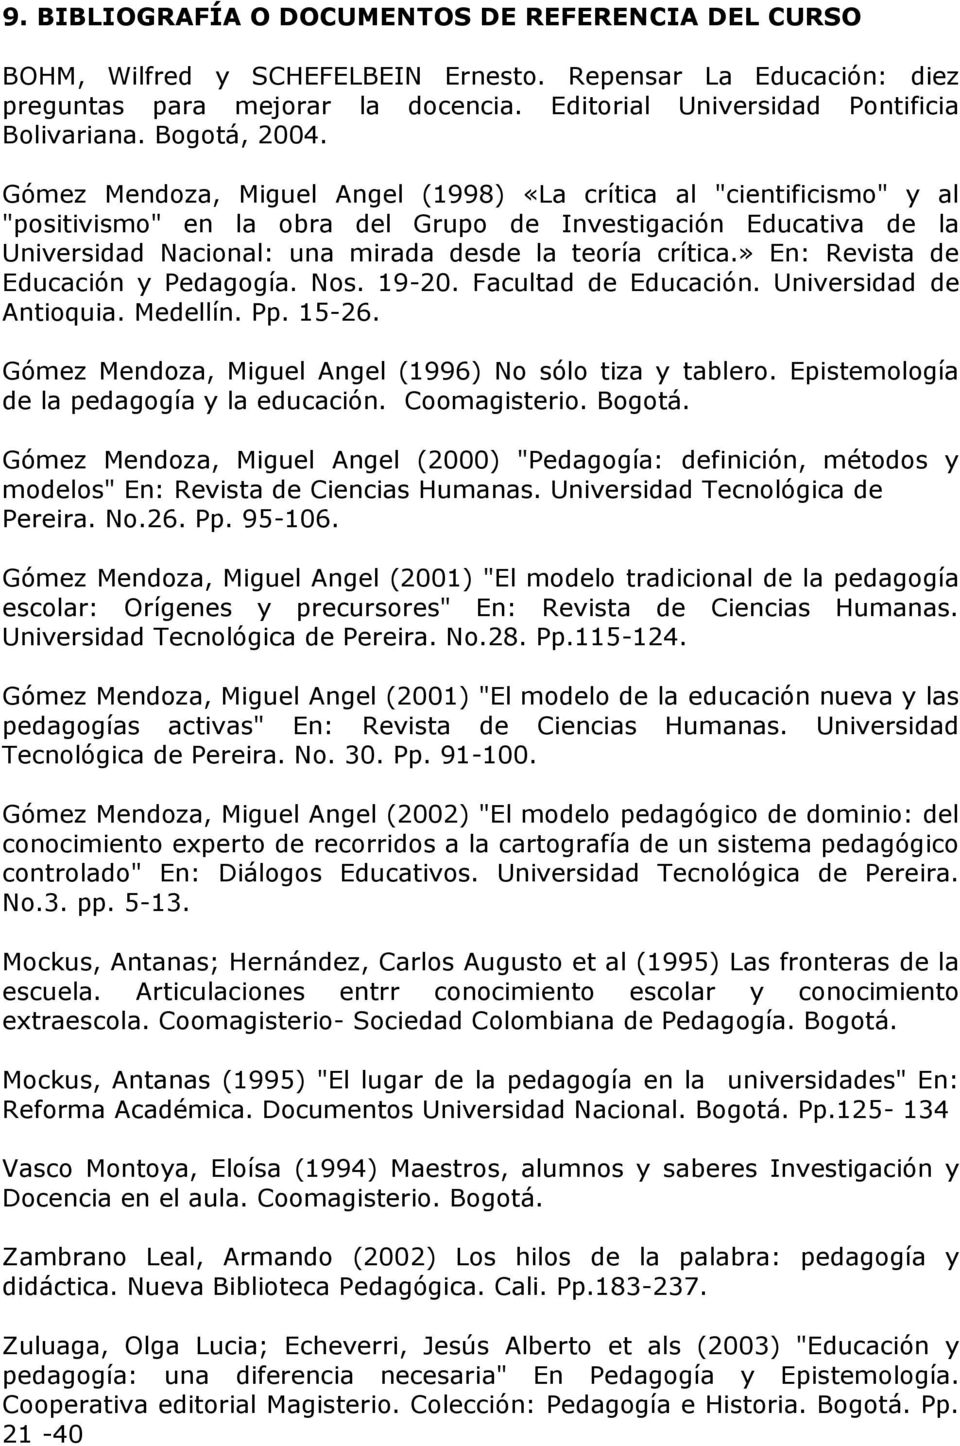 Gómez Mendoza, Miguel Angel (1998) «La crítica al "cientificismo" y al "positivismo" en la obra del Grupo de Investigación Educativa de la Universidad Nacional: una mirada desde la teoría crítica.